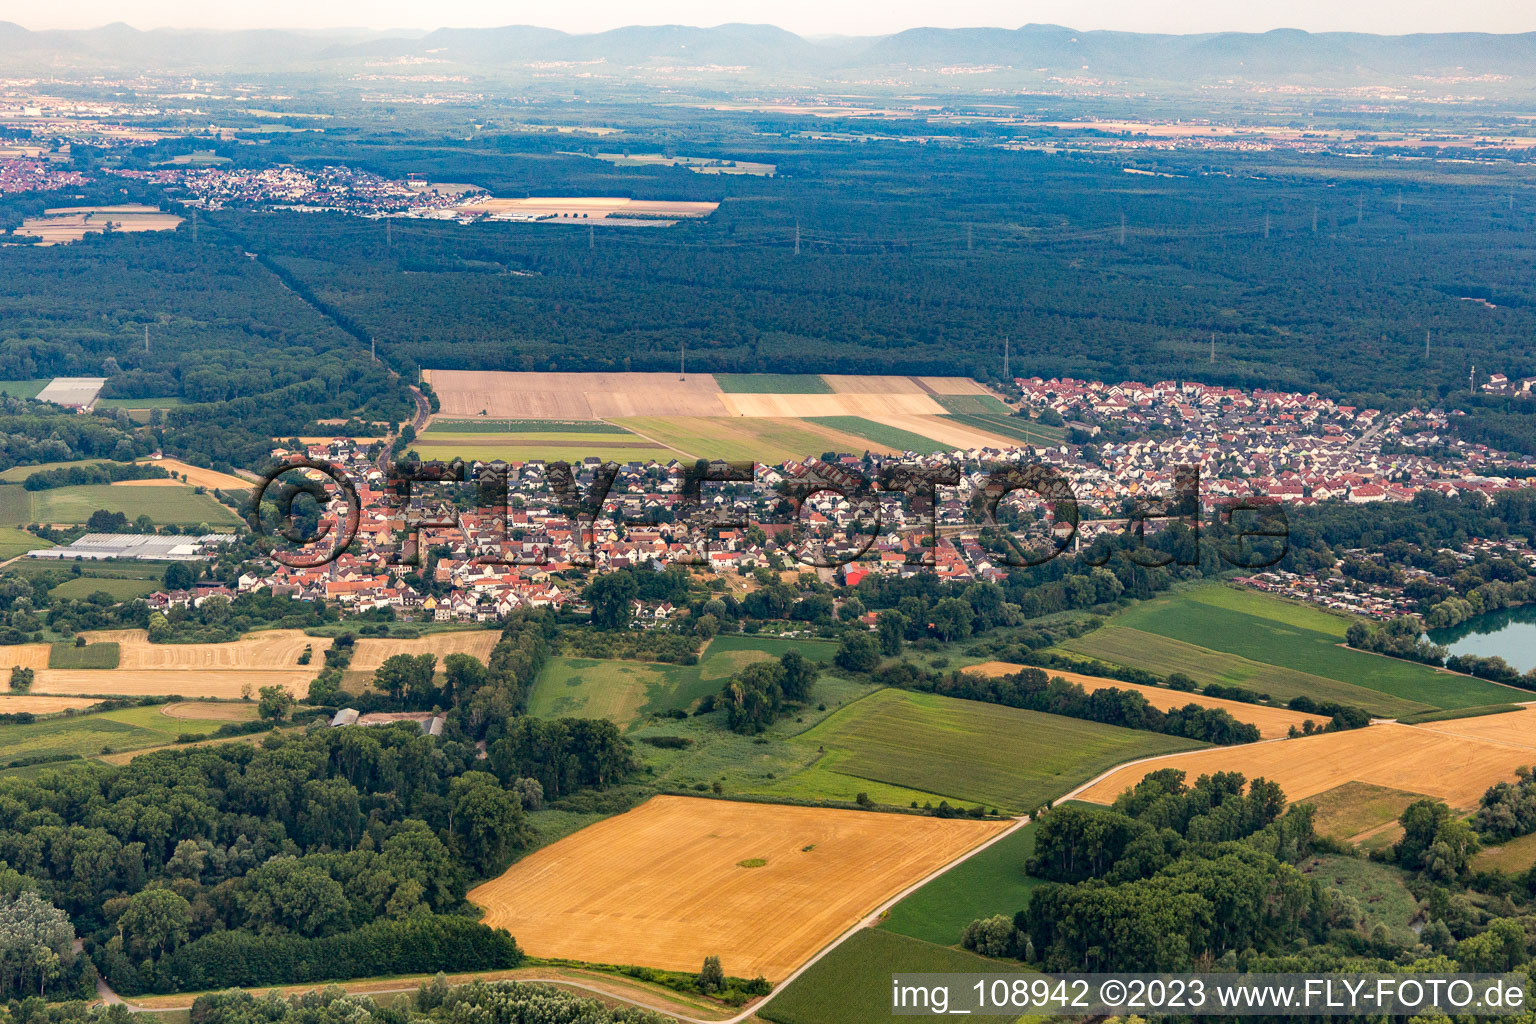 Quartier Sondernheim in Germersheim dans le département Rhénanie-Palatinat, Allemagne vue d'en haut